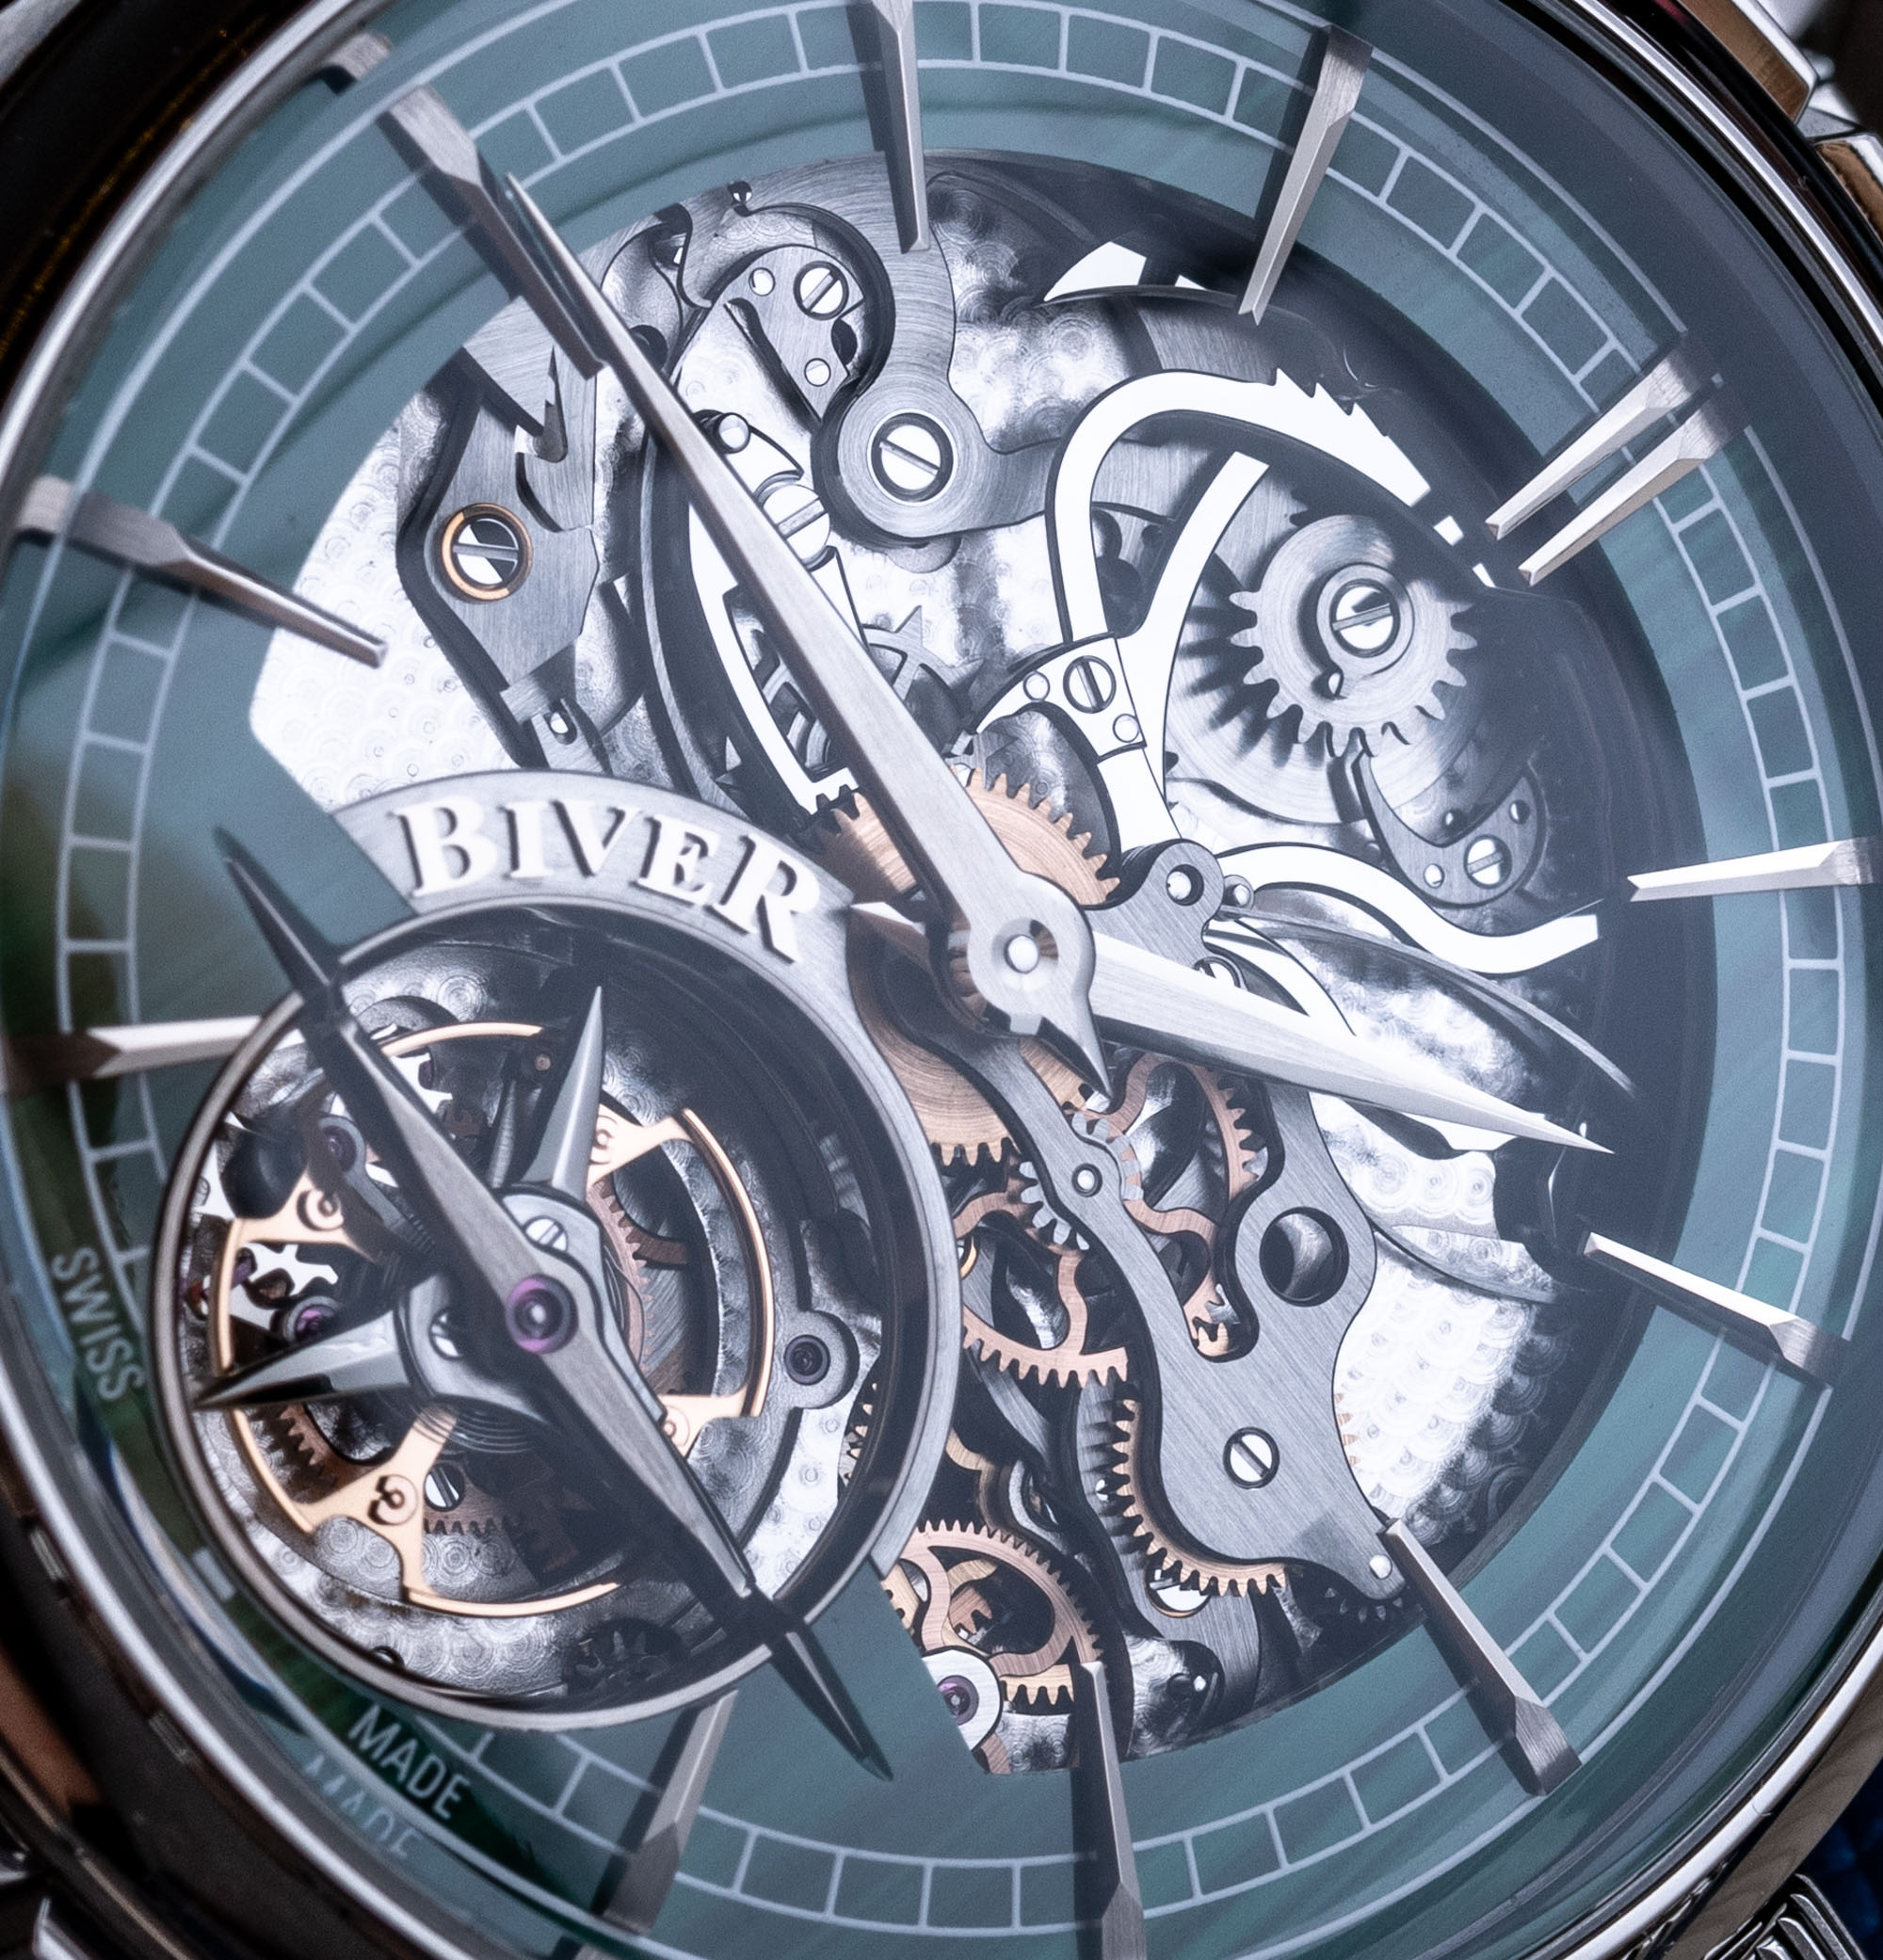 Обзор часов: Biver Carillon Tourbillon Malachite Piéce Unique Watch